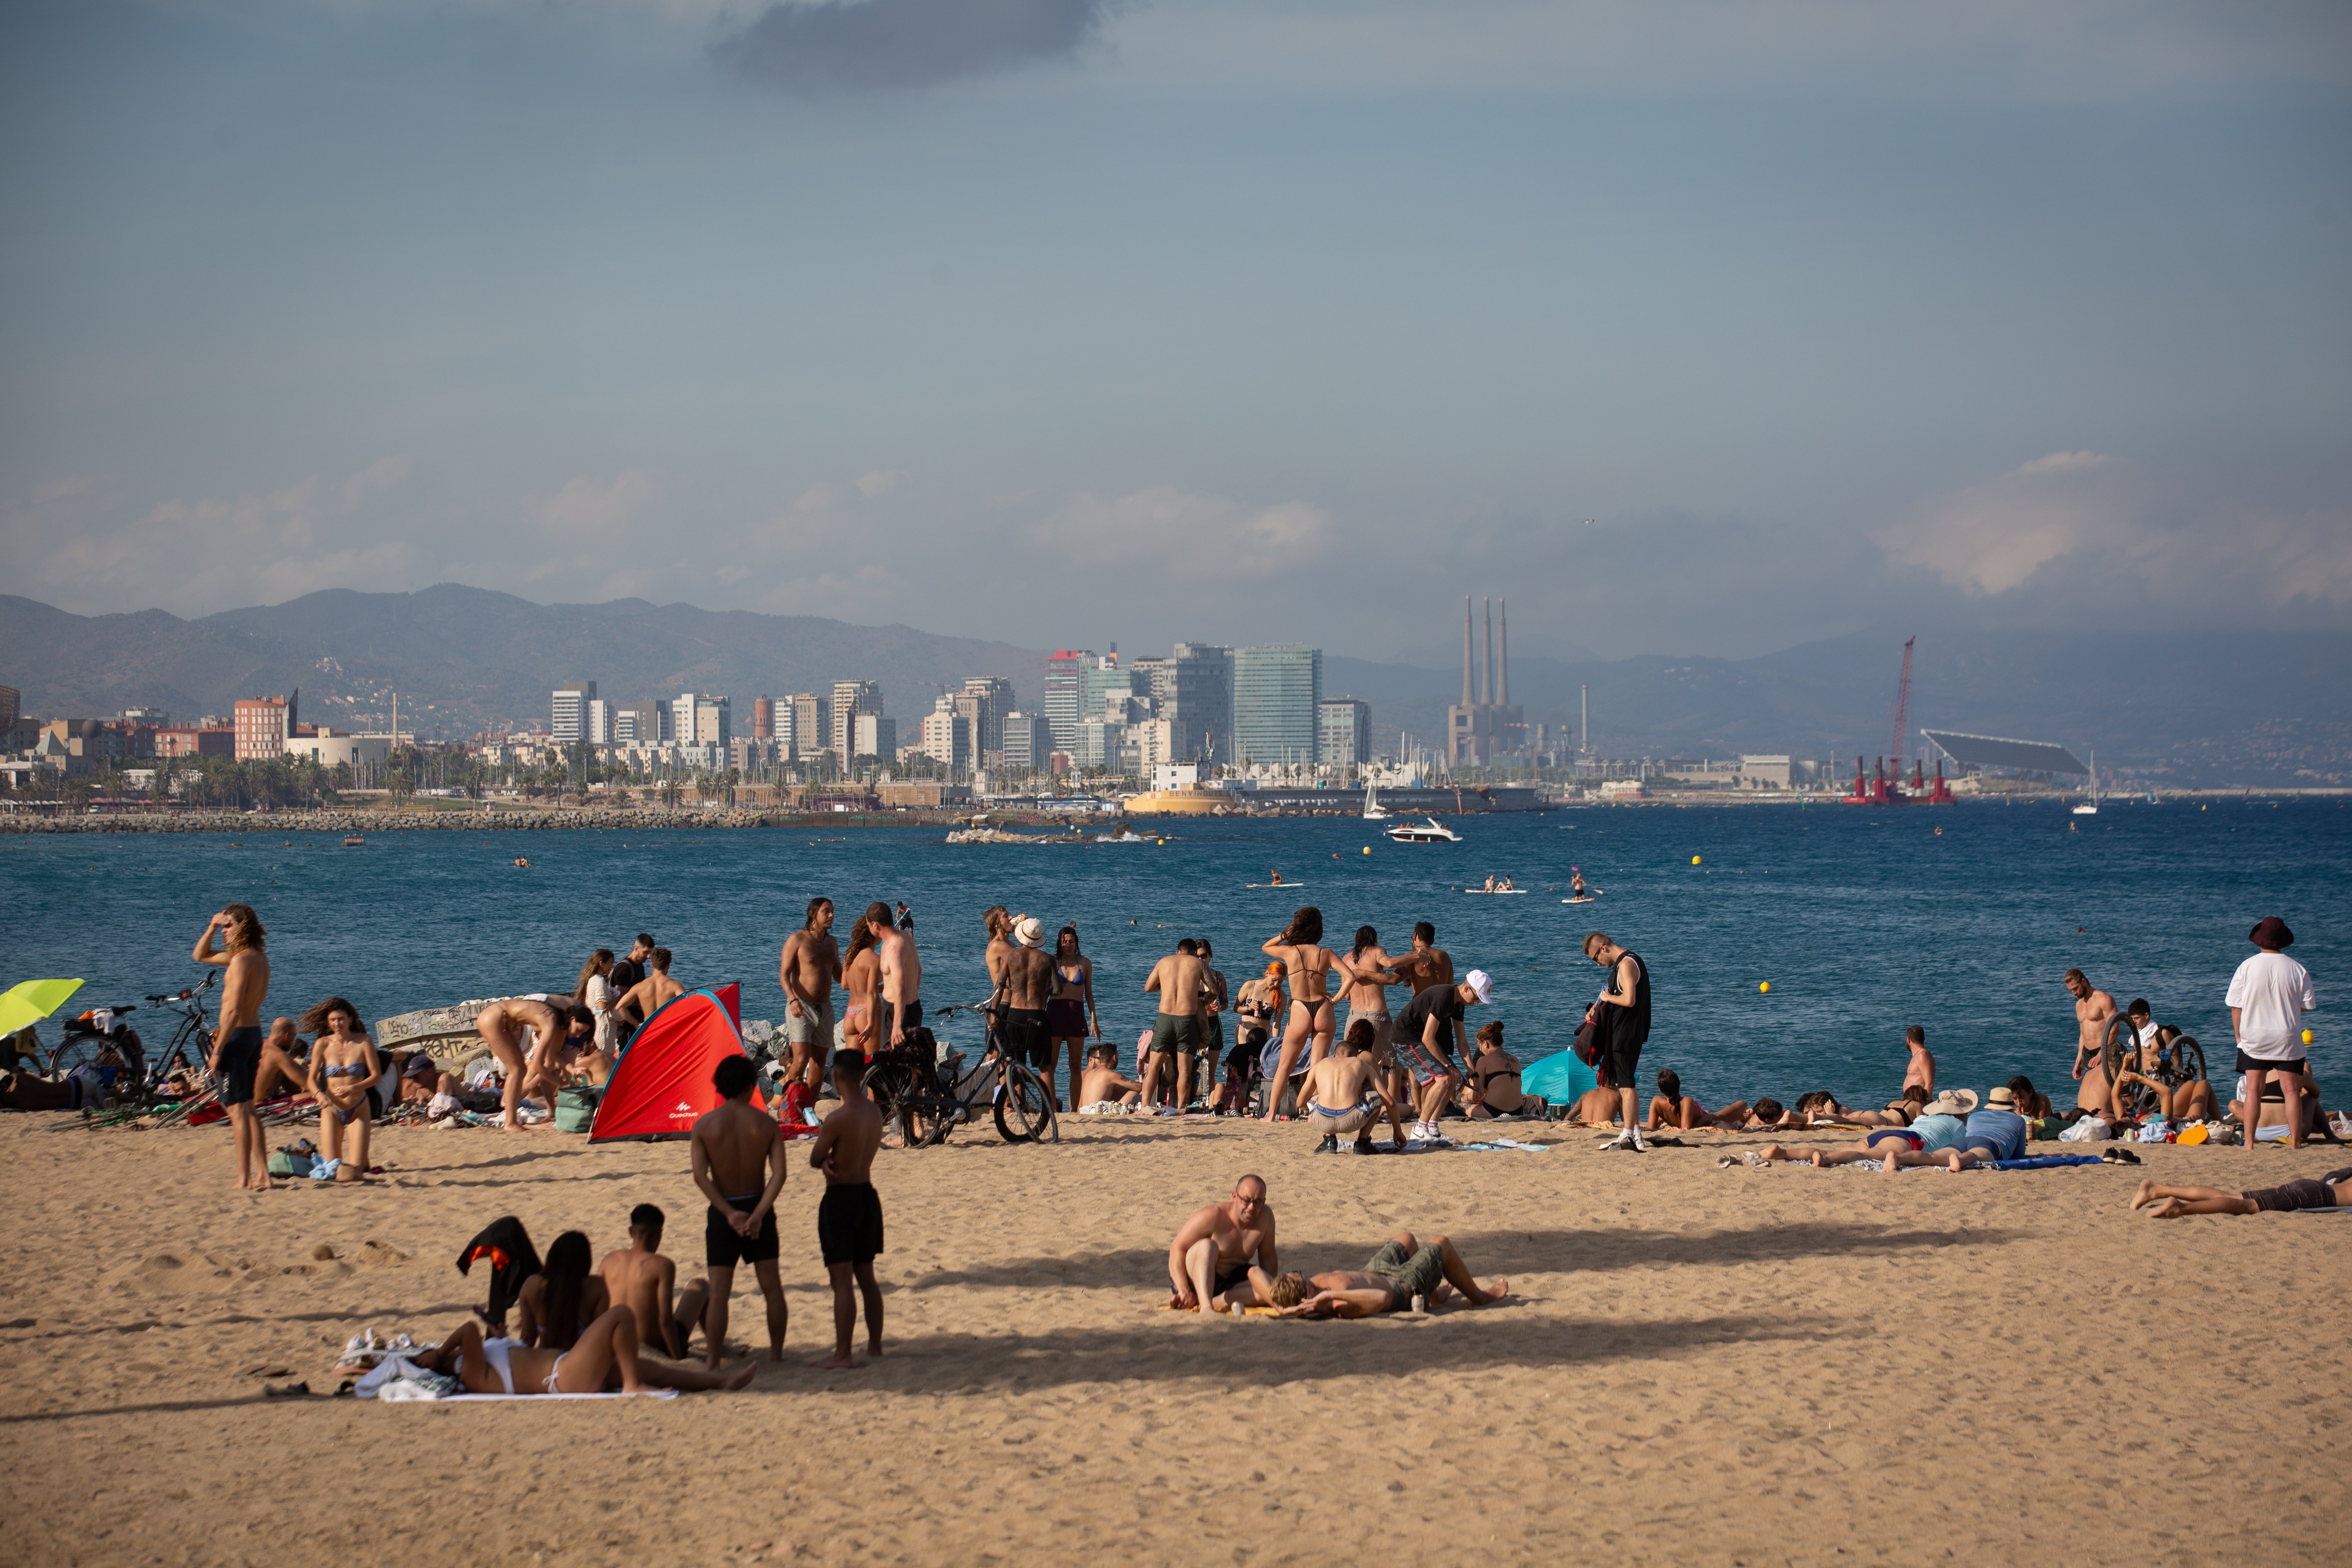 Barcelona prohibeix fumar a totes les platges a partir d'aquest estiu